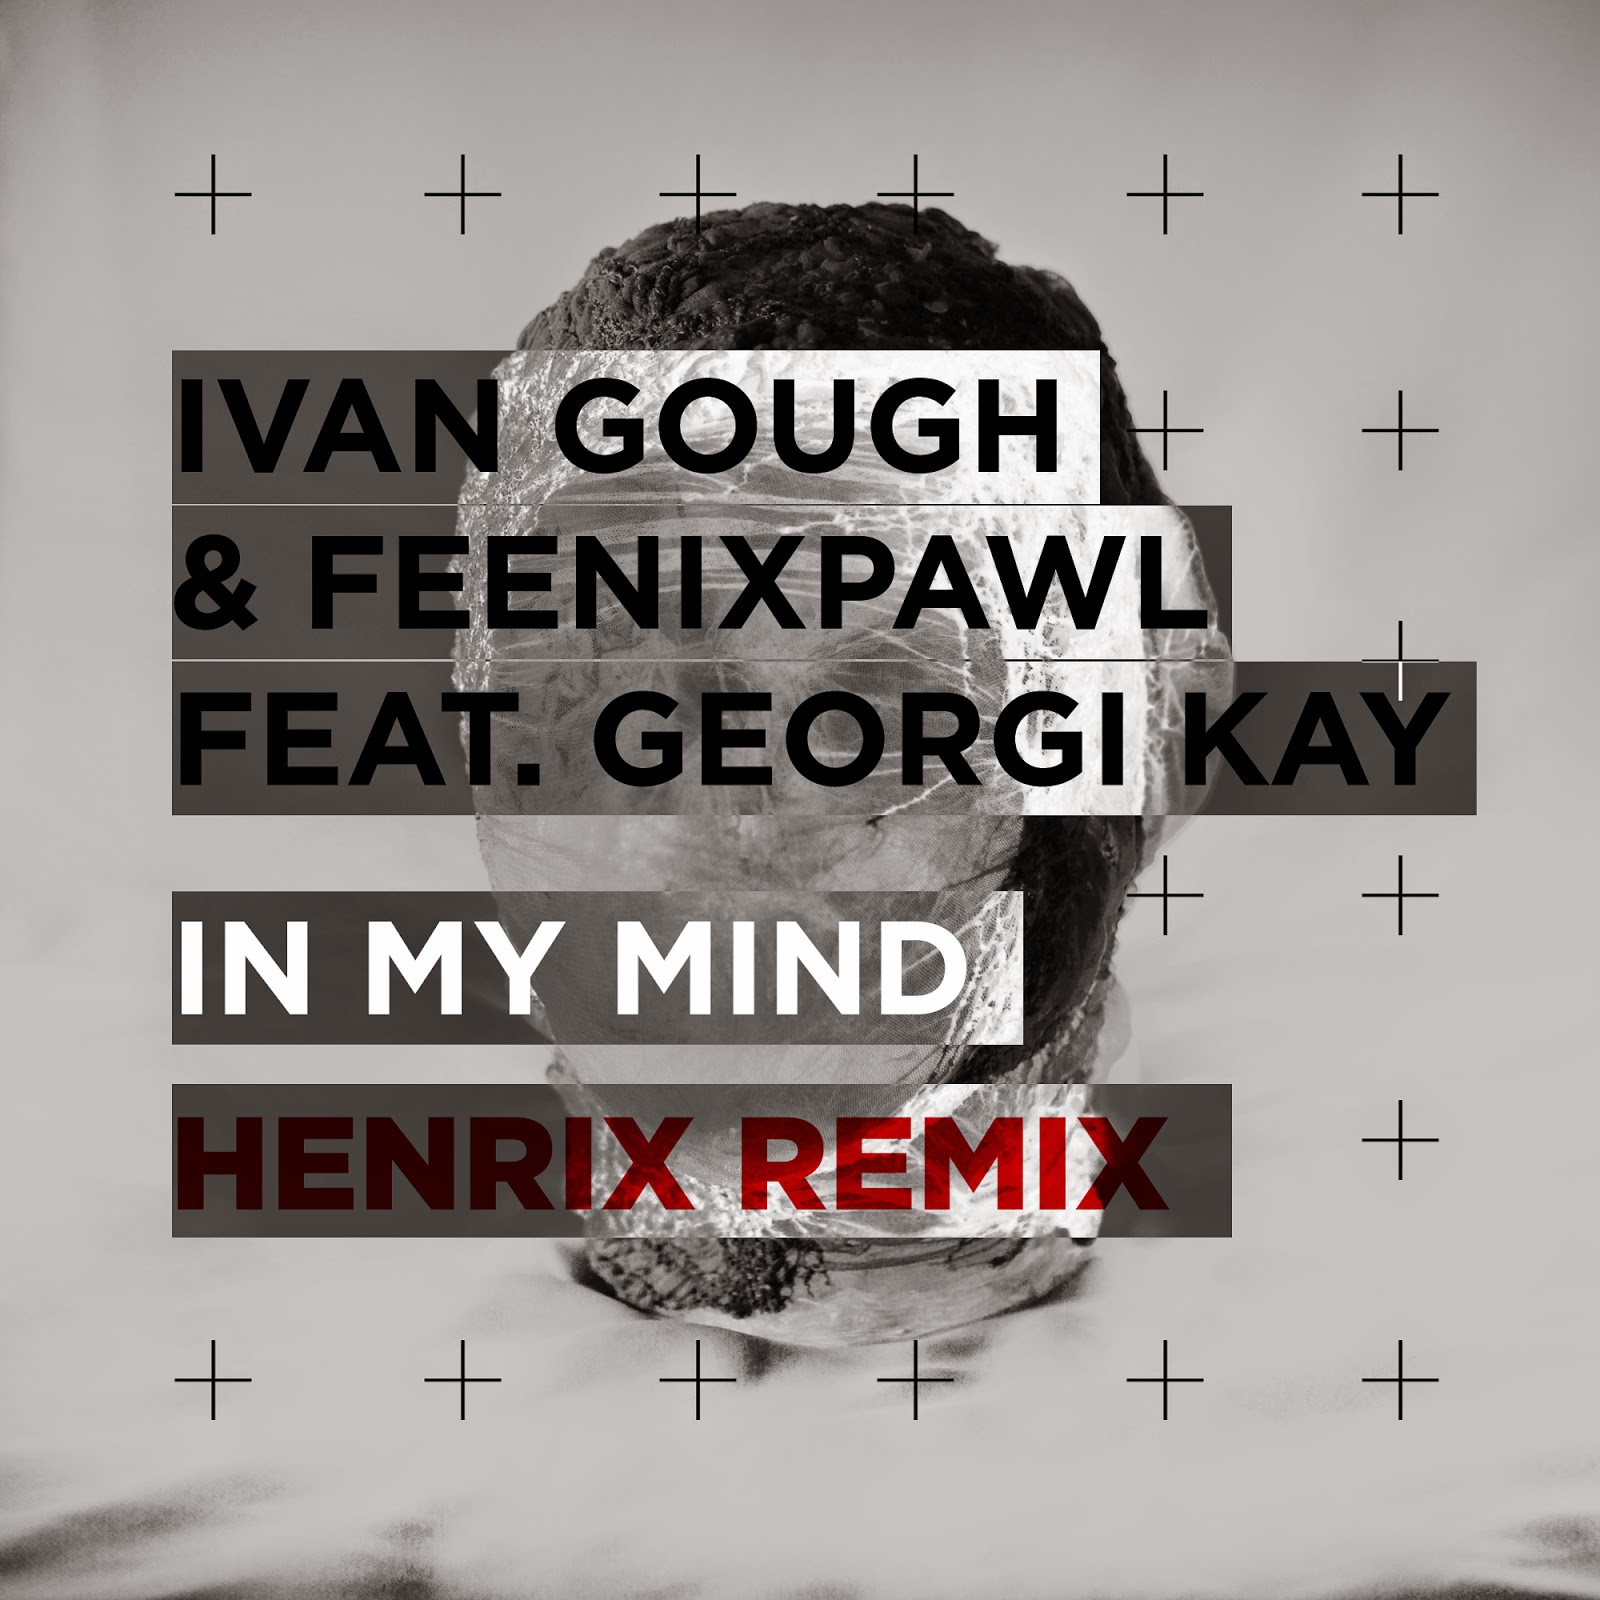 IVAN GOUGH & FEENIXPAWL FT GEORGI KAY – IN MY MIND  (HENRIX REMIX)